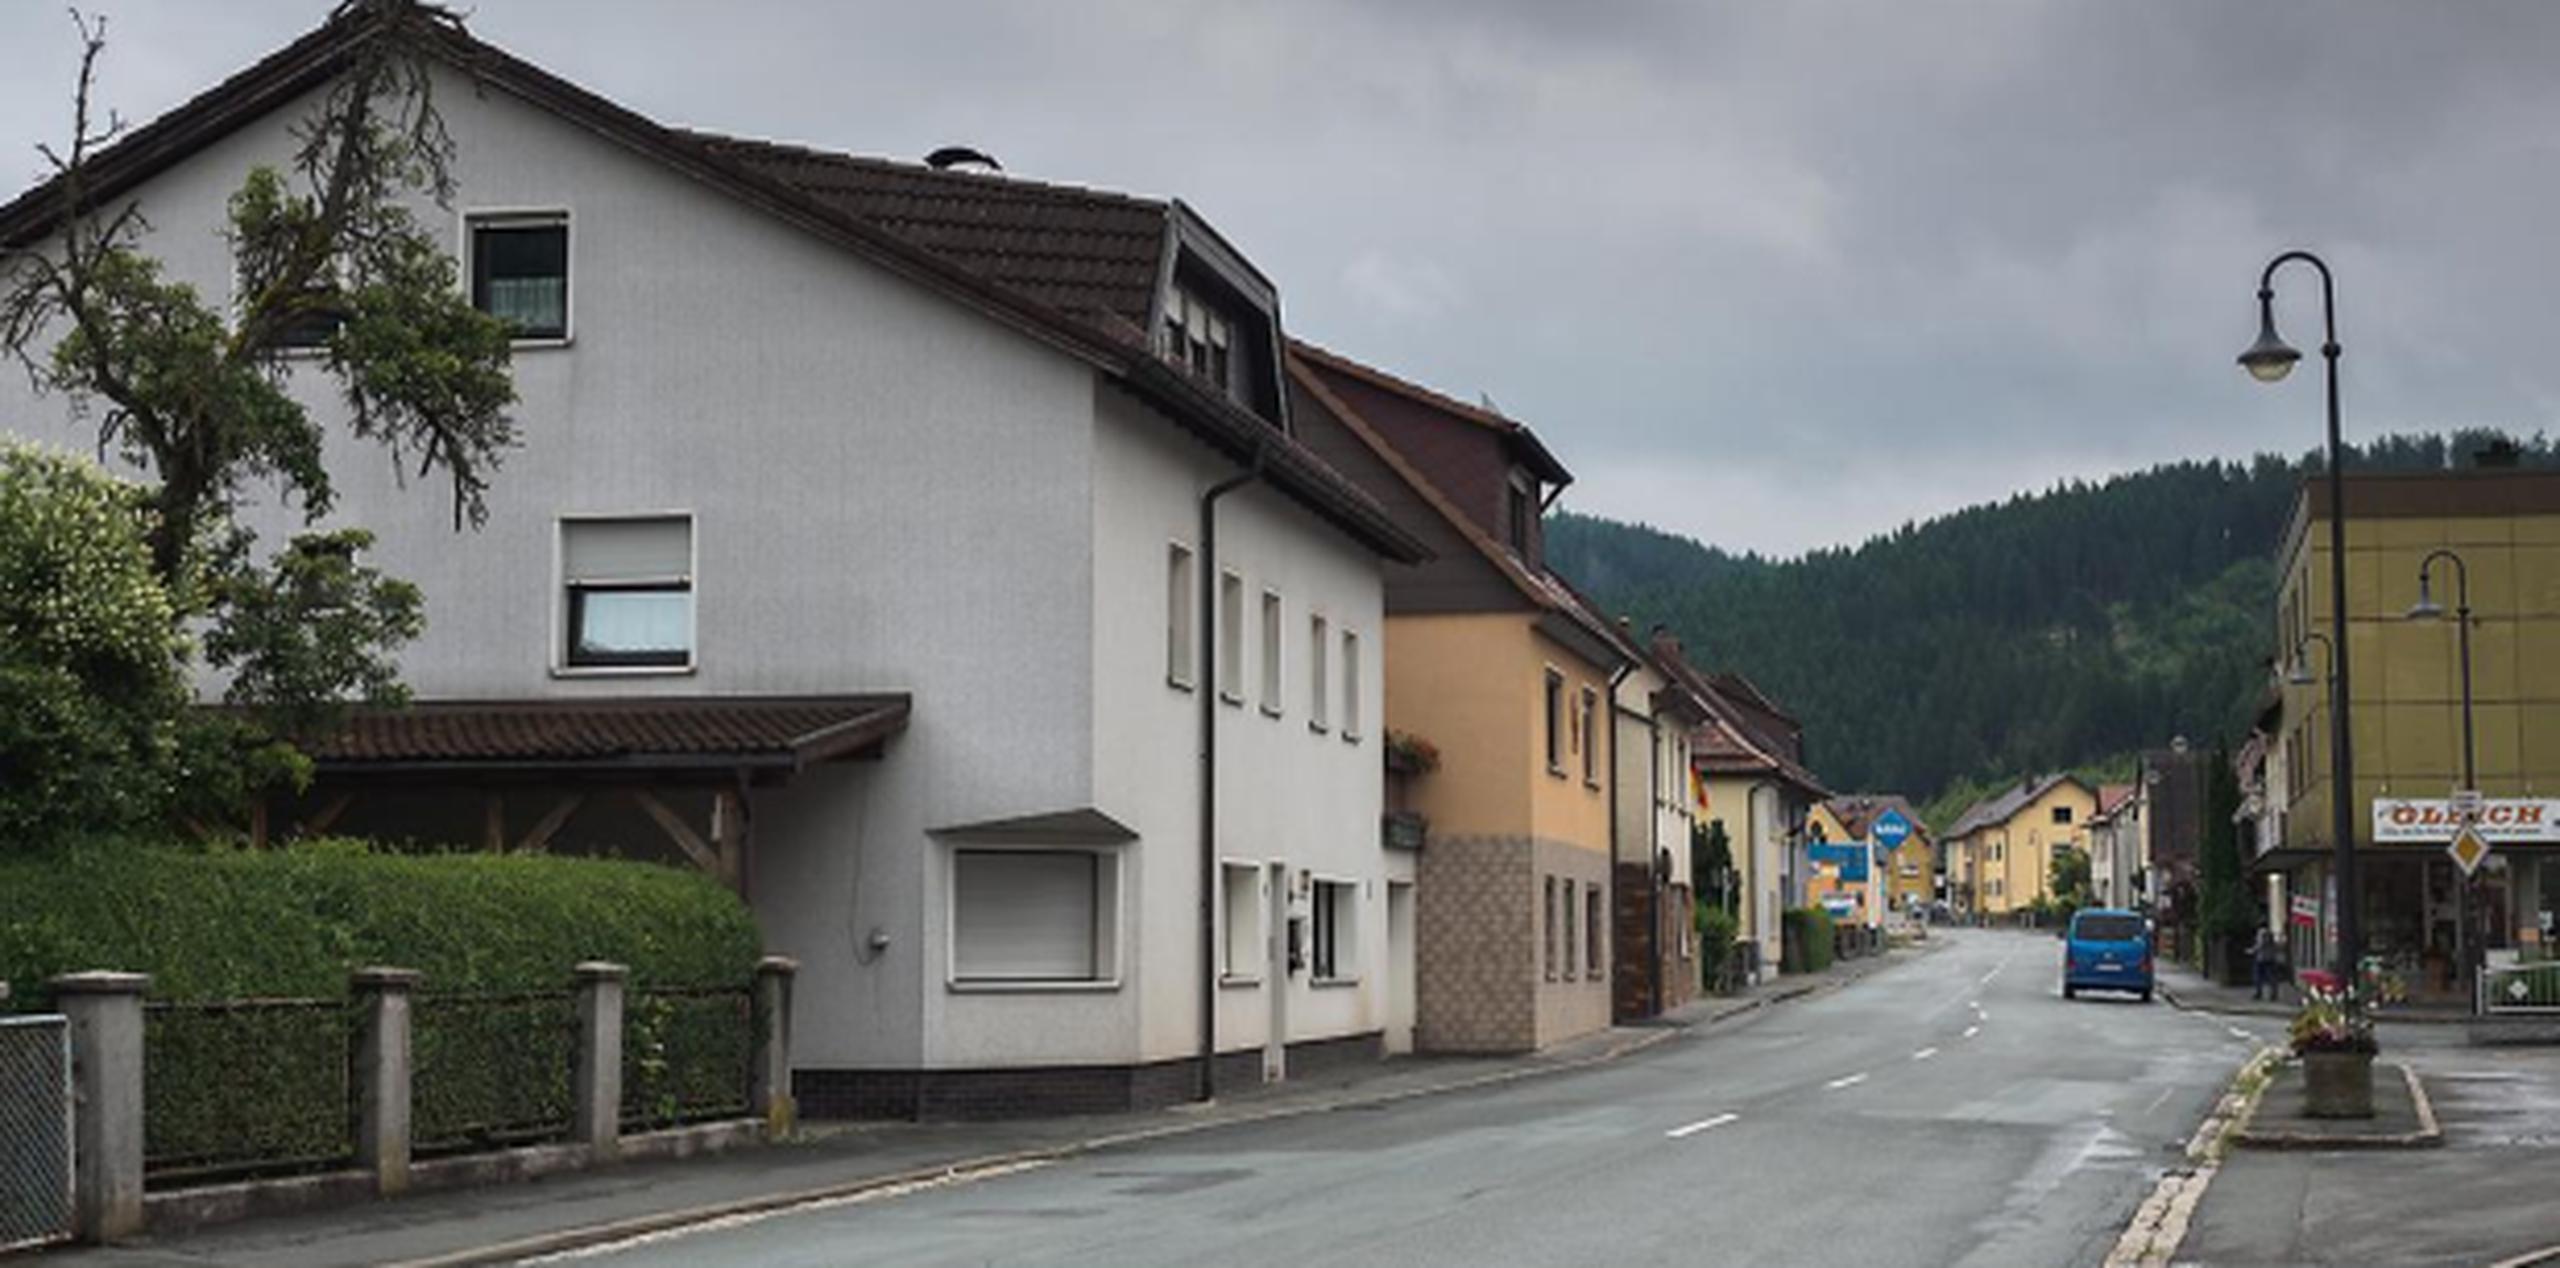 El pasado mes de noviembre fueron encontrados los cadáveres de los ocho bebés, envueltos en toallas y bolsas de plástico en una vivienda de la pequeña localidad bávara de Wallenfels. (AP)